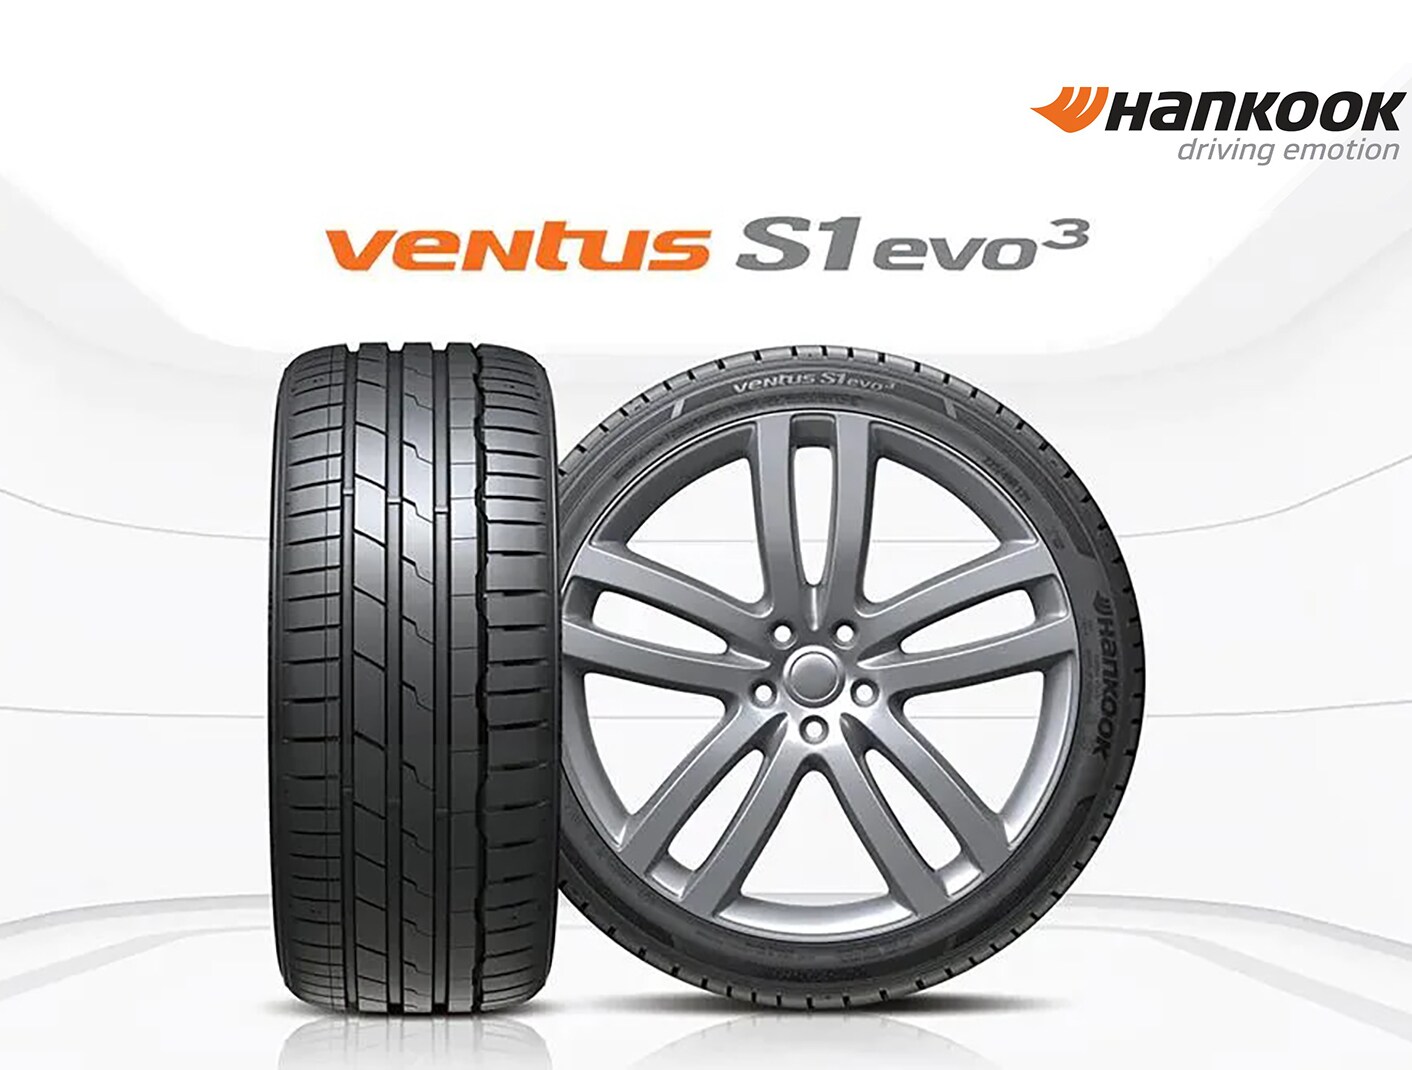 ハンコックタイヤ、サマータイヤ「Ventus S1 evo3」「Ventus S1 evo3 SUV」「Ventus Prime4」を2023年1月より国内で順次発売